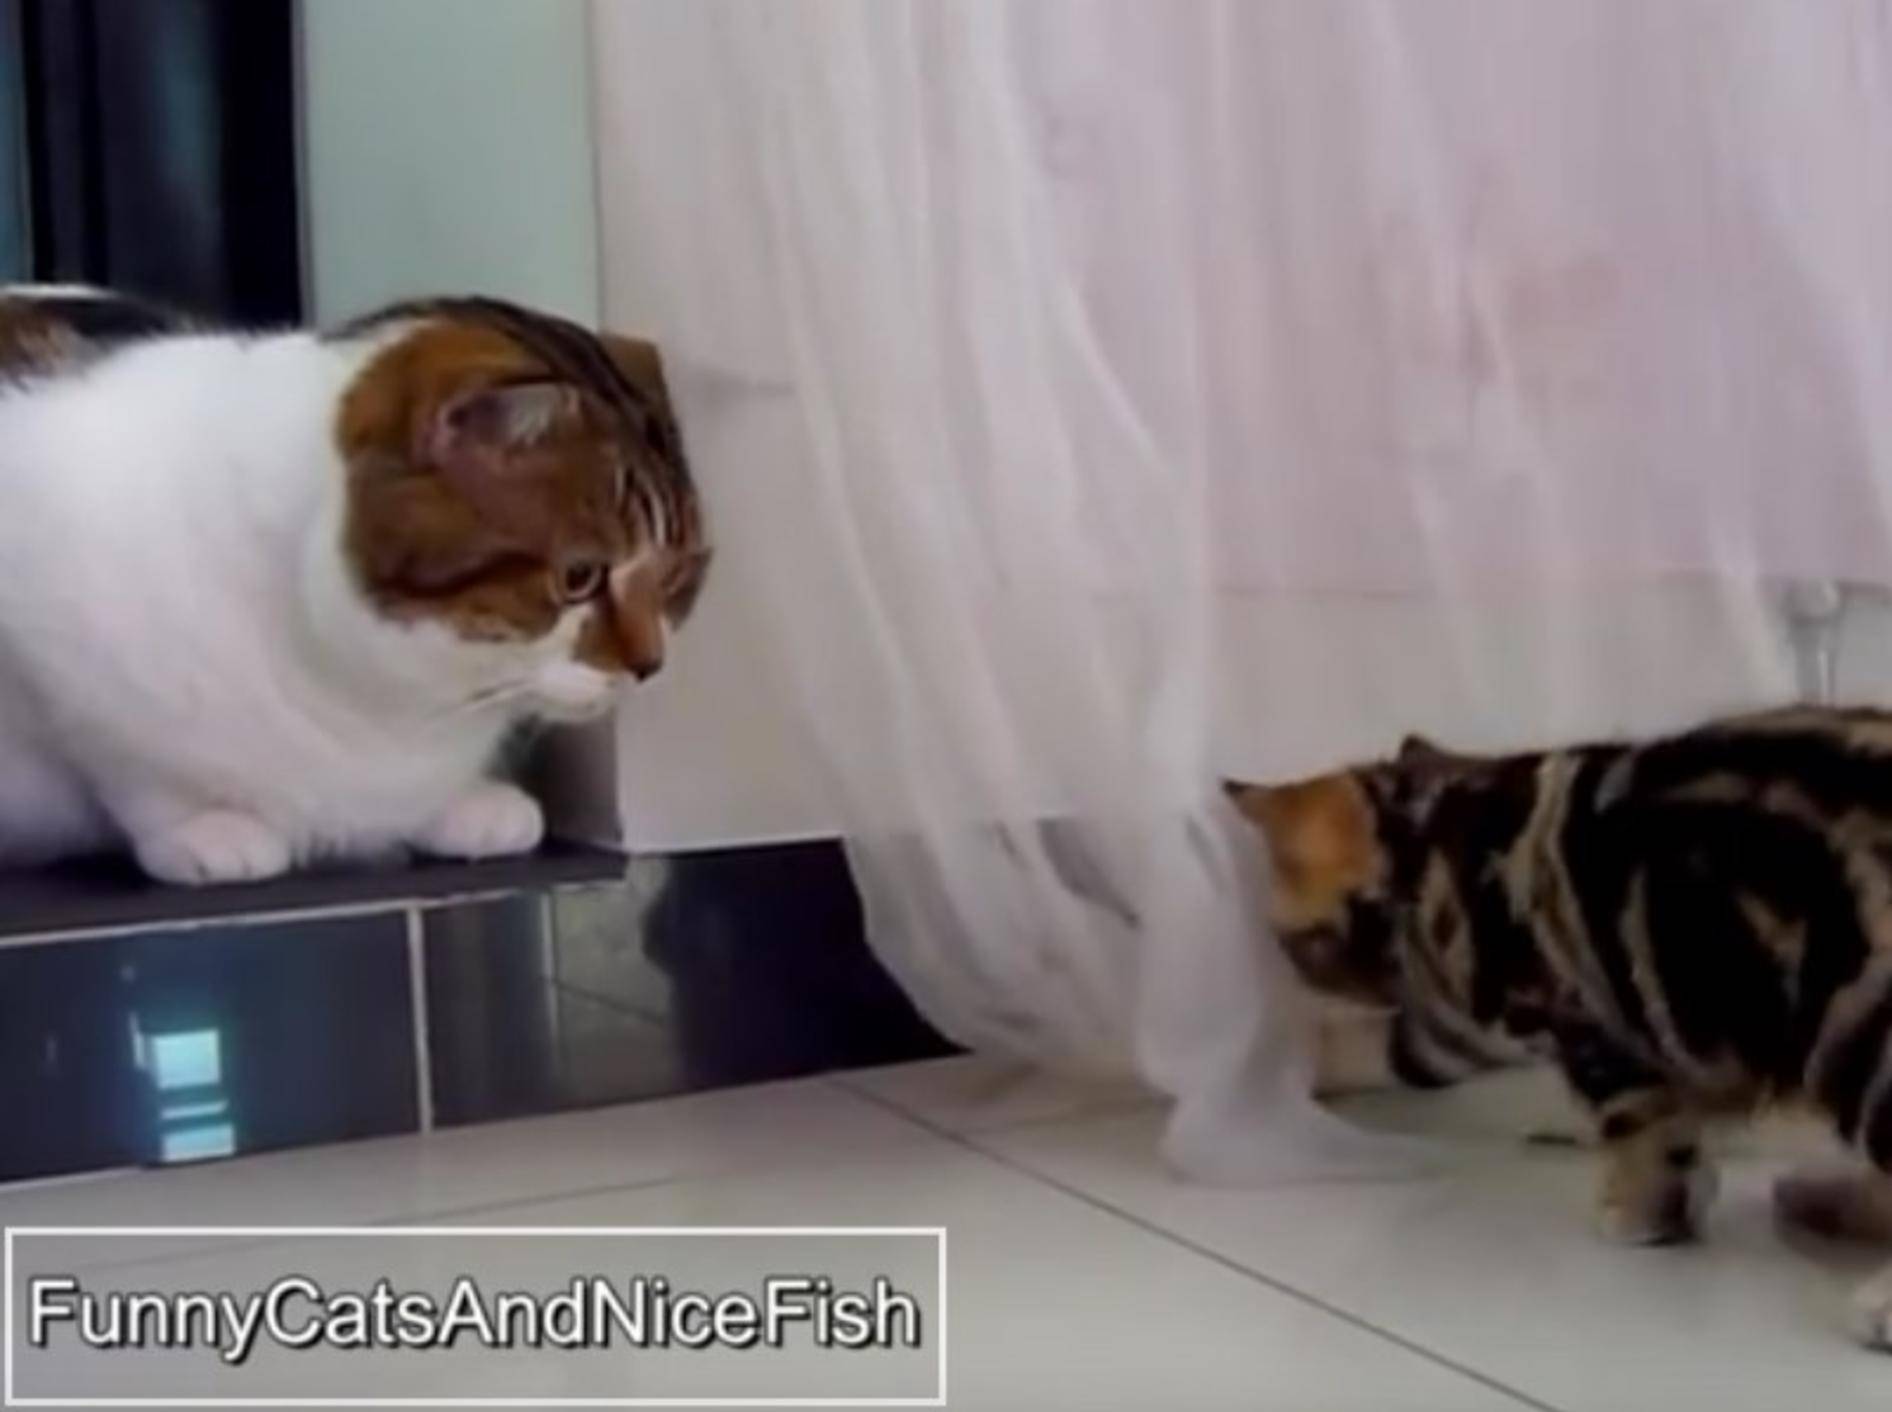 Das Spiel zwischen den zwei Katzen klappt noch nicht ganz so gut – YouTube / Funnycatsandnicefish